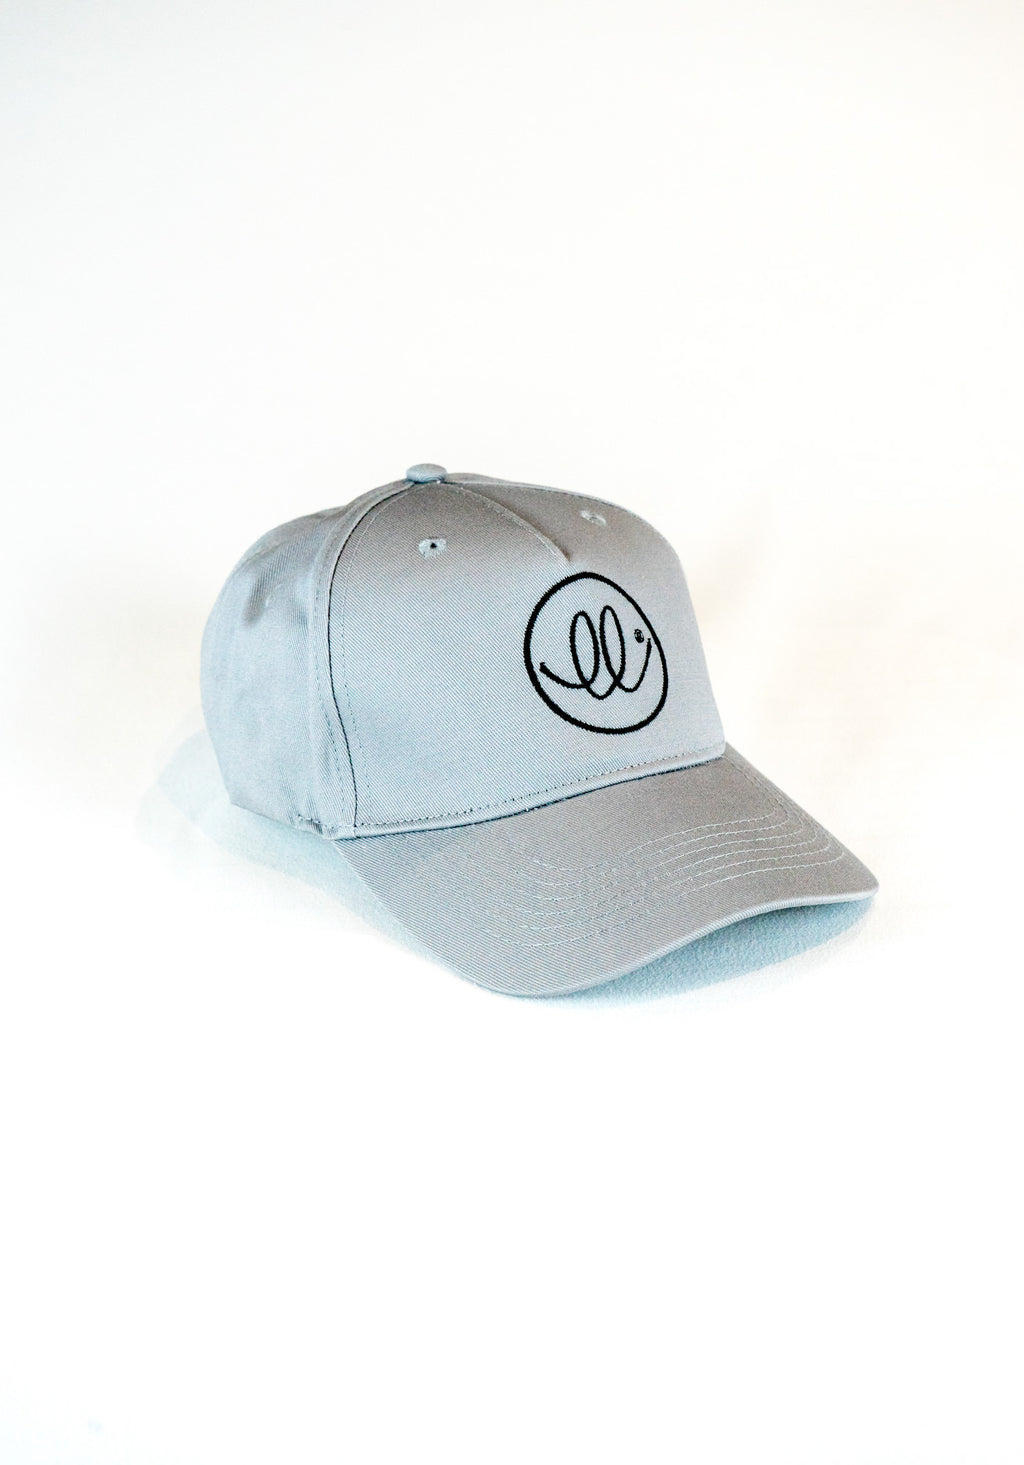 grey cap, unisex, sustainably made